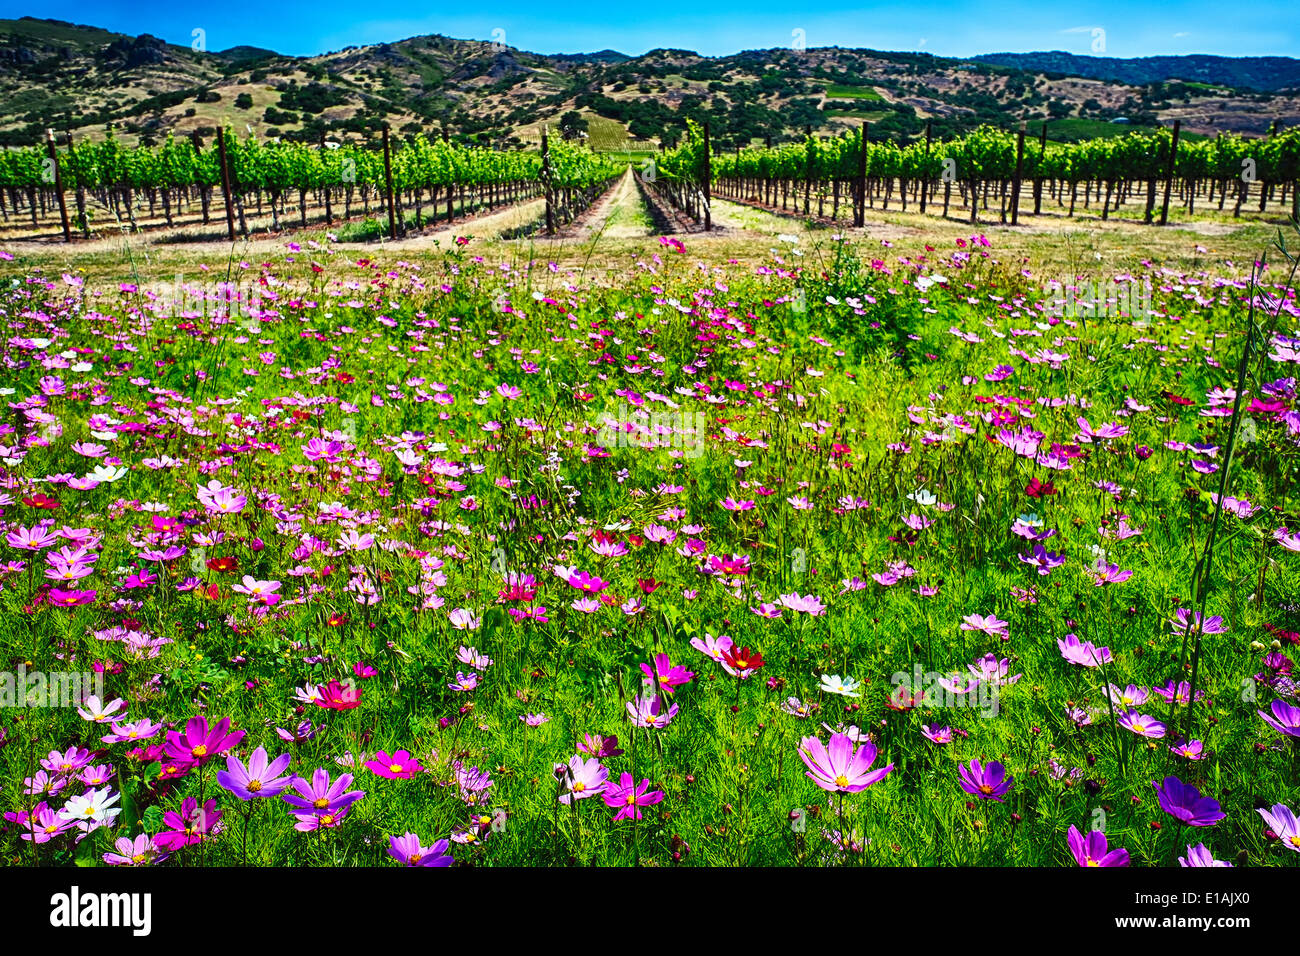 Niedrigen Winkel Ansicht von Wildblumenwiese und Reihe von Weinreben, Napa Valley, Kalifornien Stockfoto